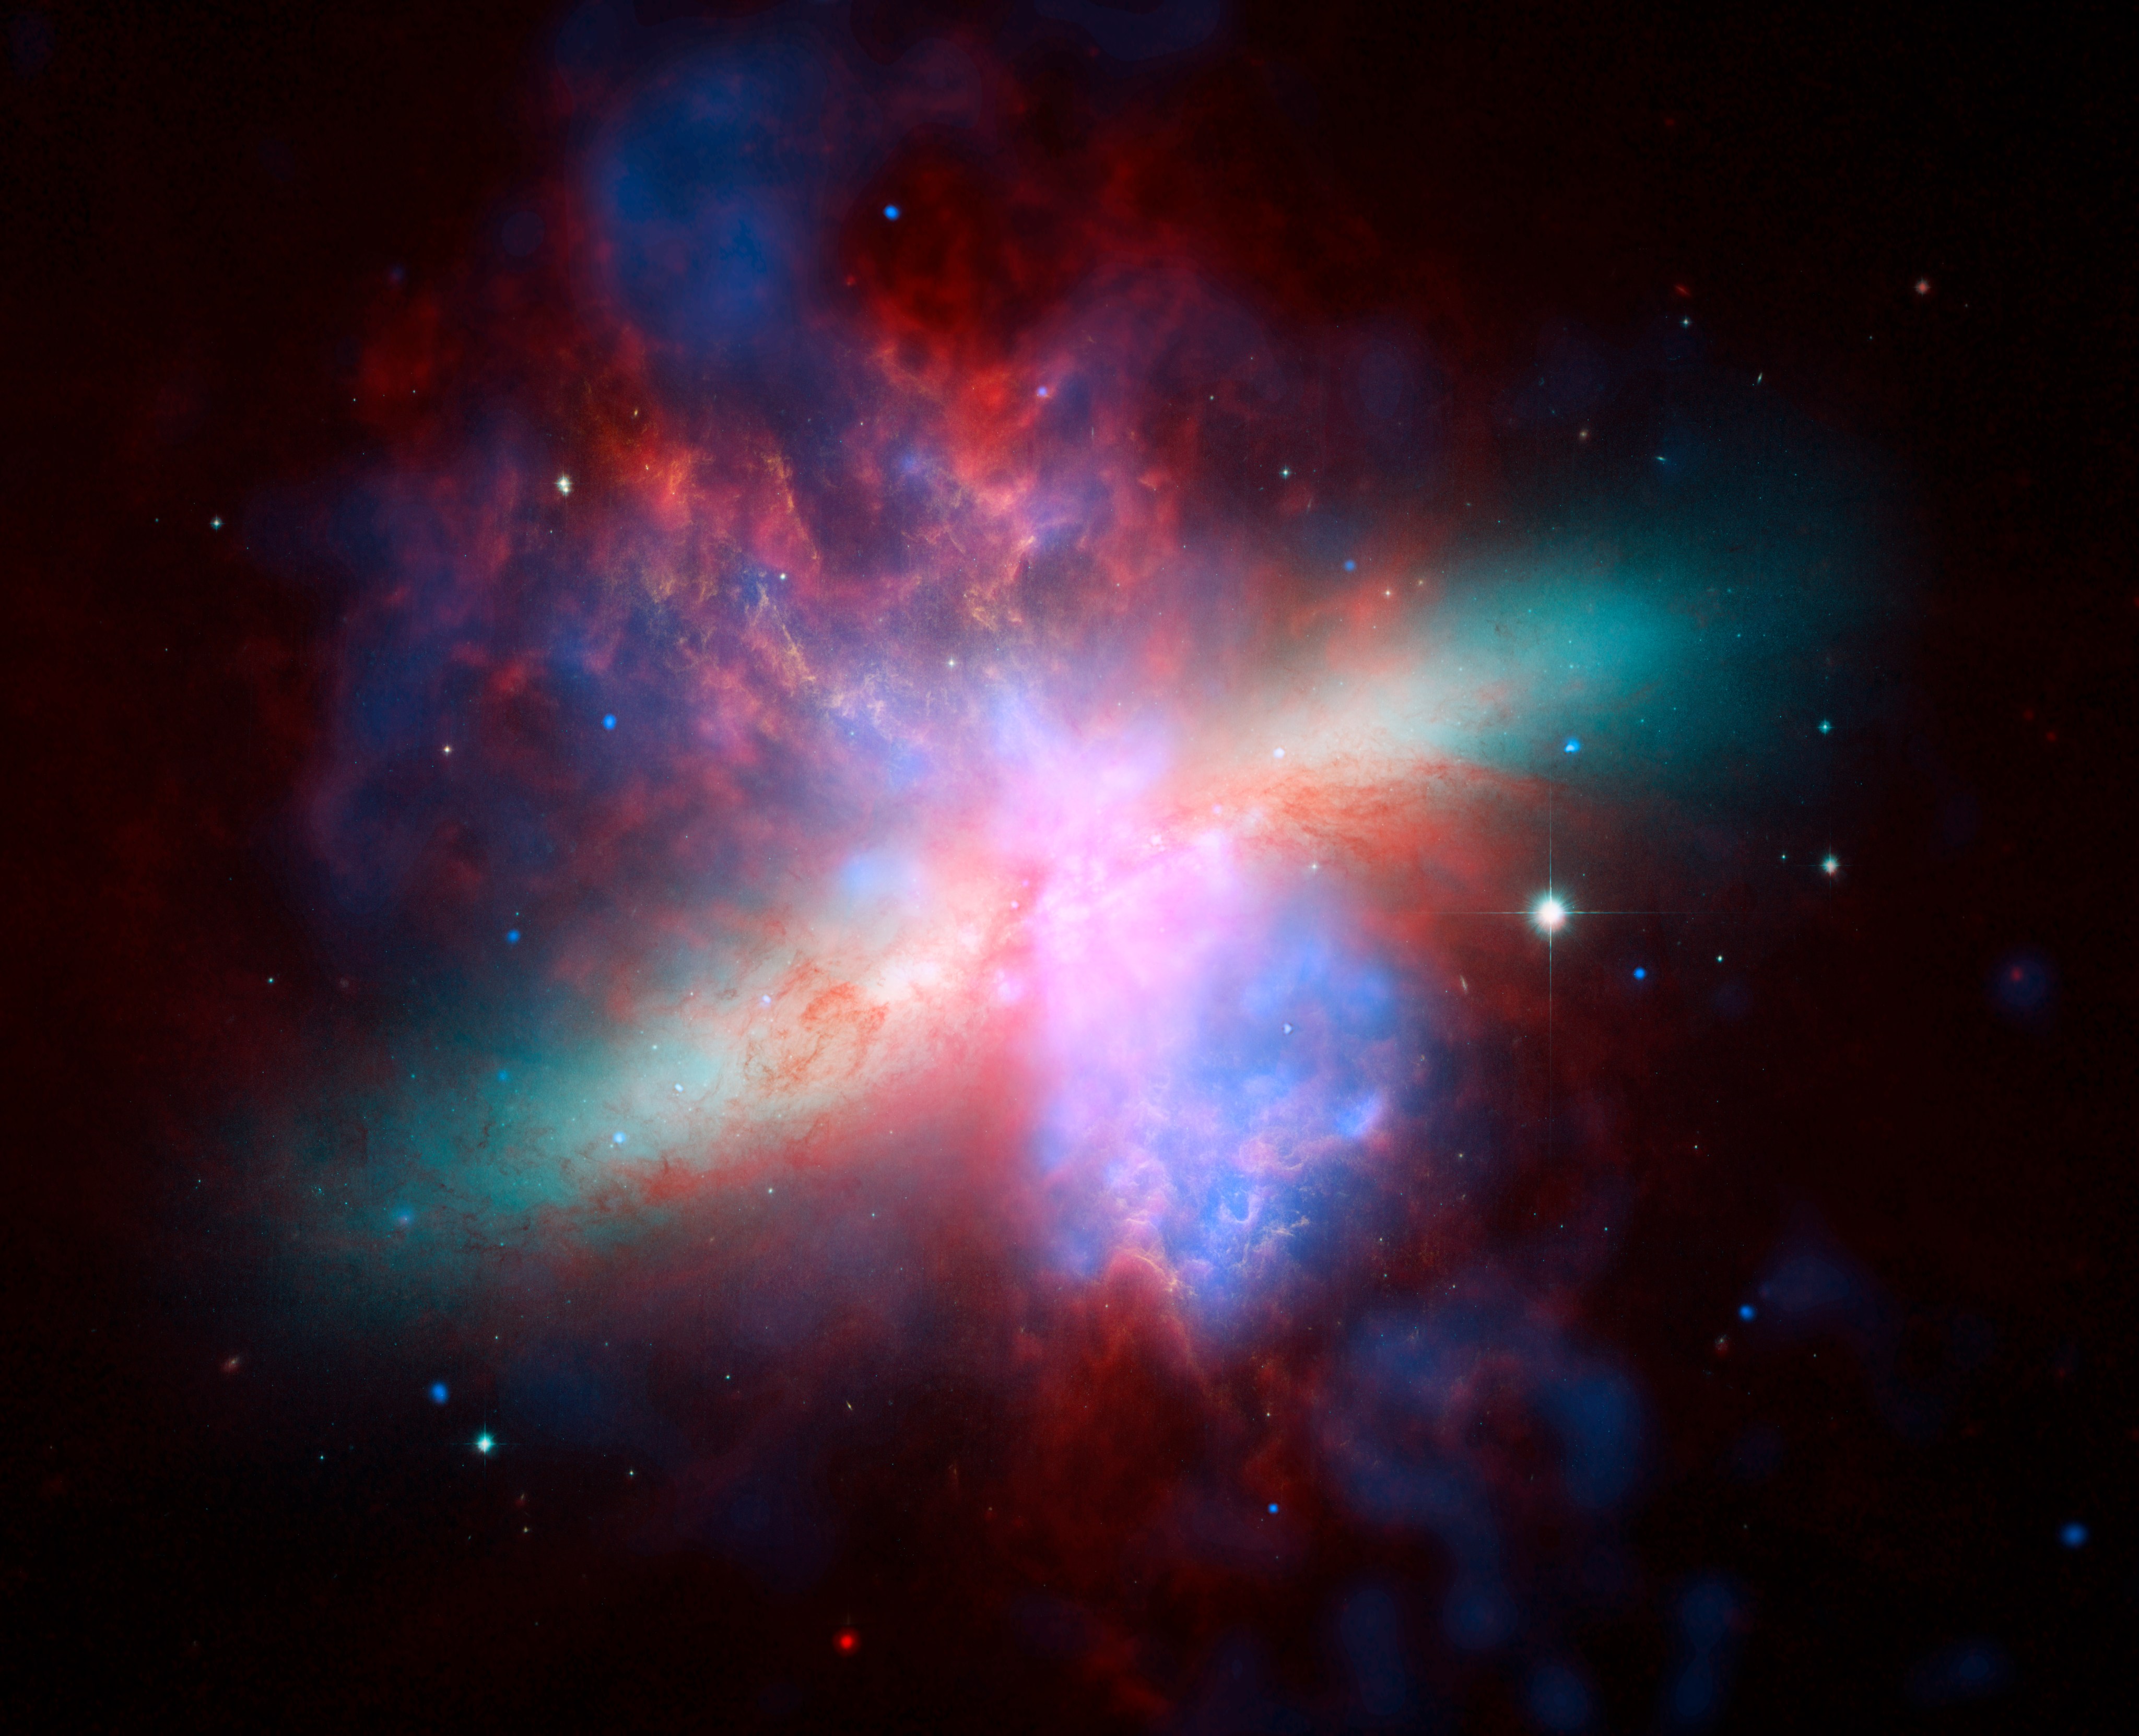 美国国家航空航天局的斯皮策、哈勃和钱德拉空间天文台联合制作了这张M82星系的多波长视图。这幅生动的肖像画庆祝了哈勃“甜蜜的十六岁”生日。钱德拉记录的X射线数据显示为蓝色；斯皮策记录的红外光呈红色；哈勃对氢发射的观测结果显示为橙色，最蓝的可见光显示为黄绿色。